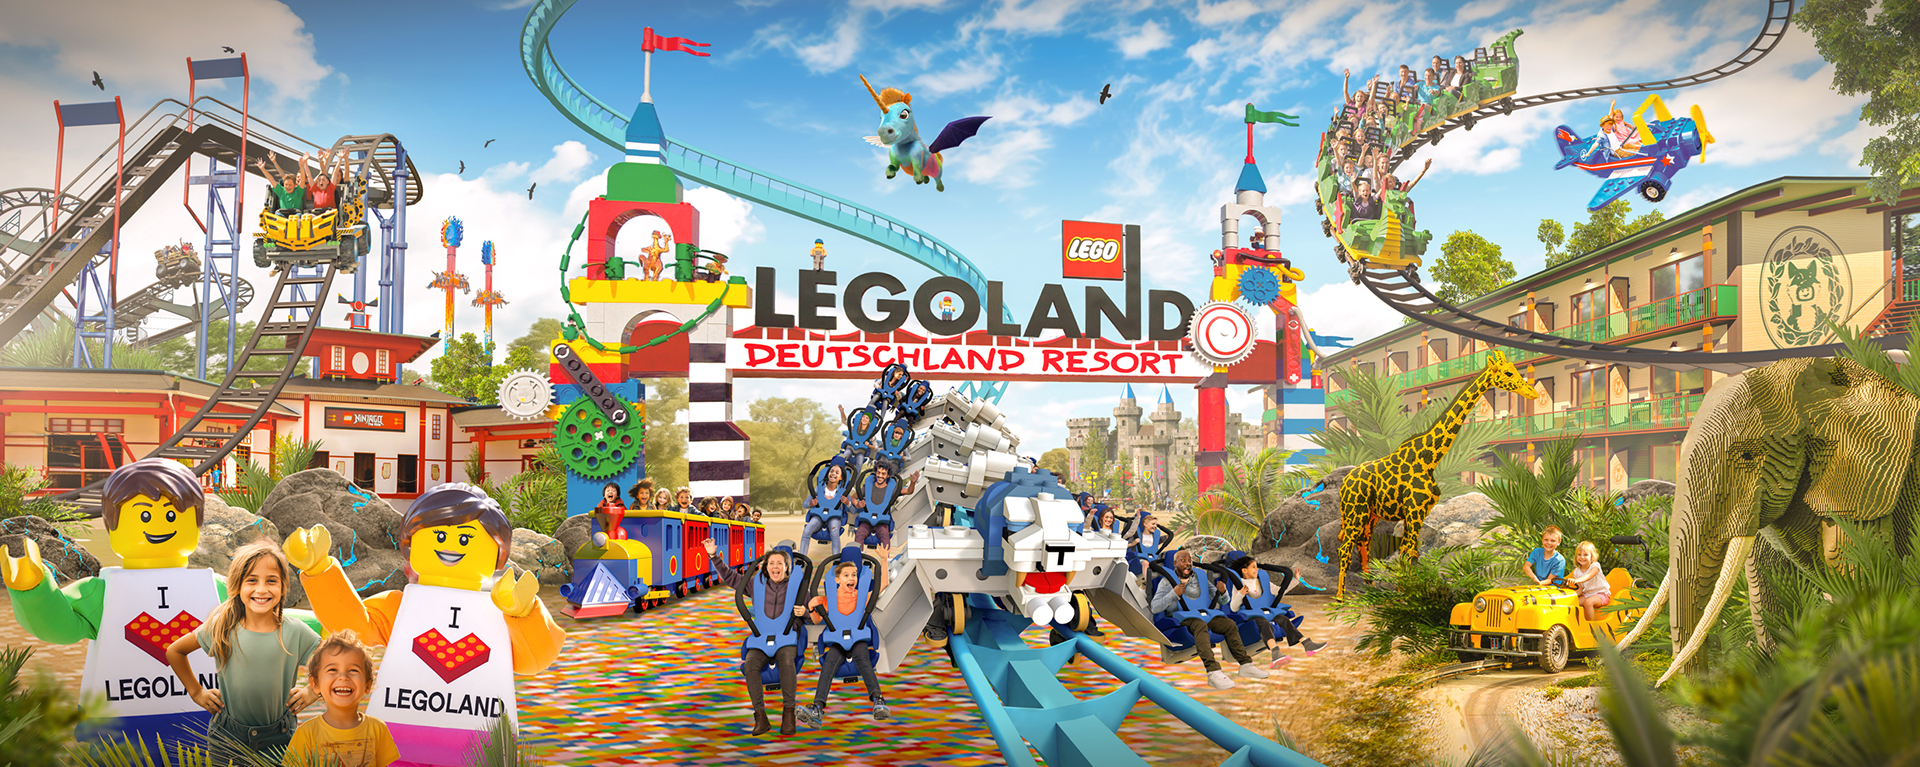 Spaß und Abenteuer im LEGOLAND® Deutschland Resort!